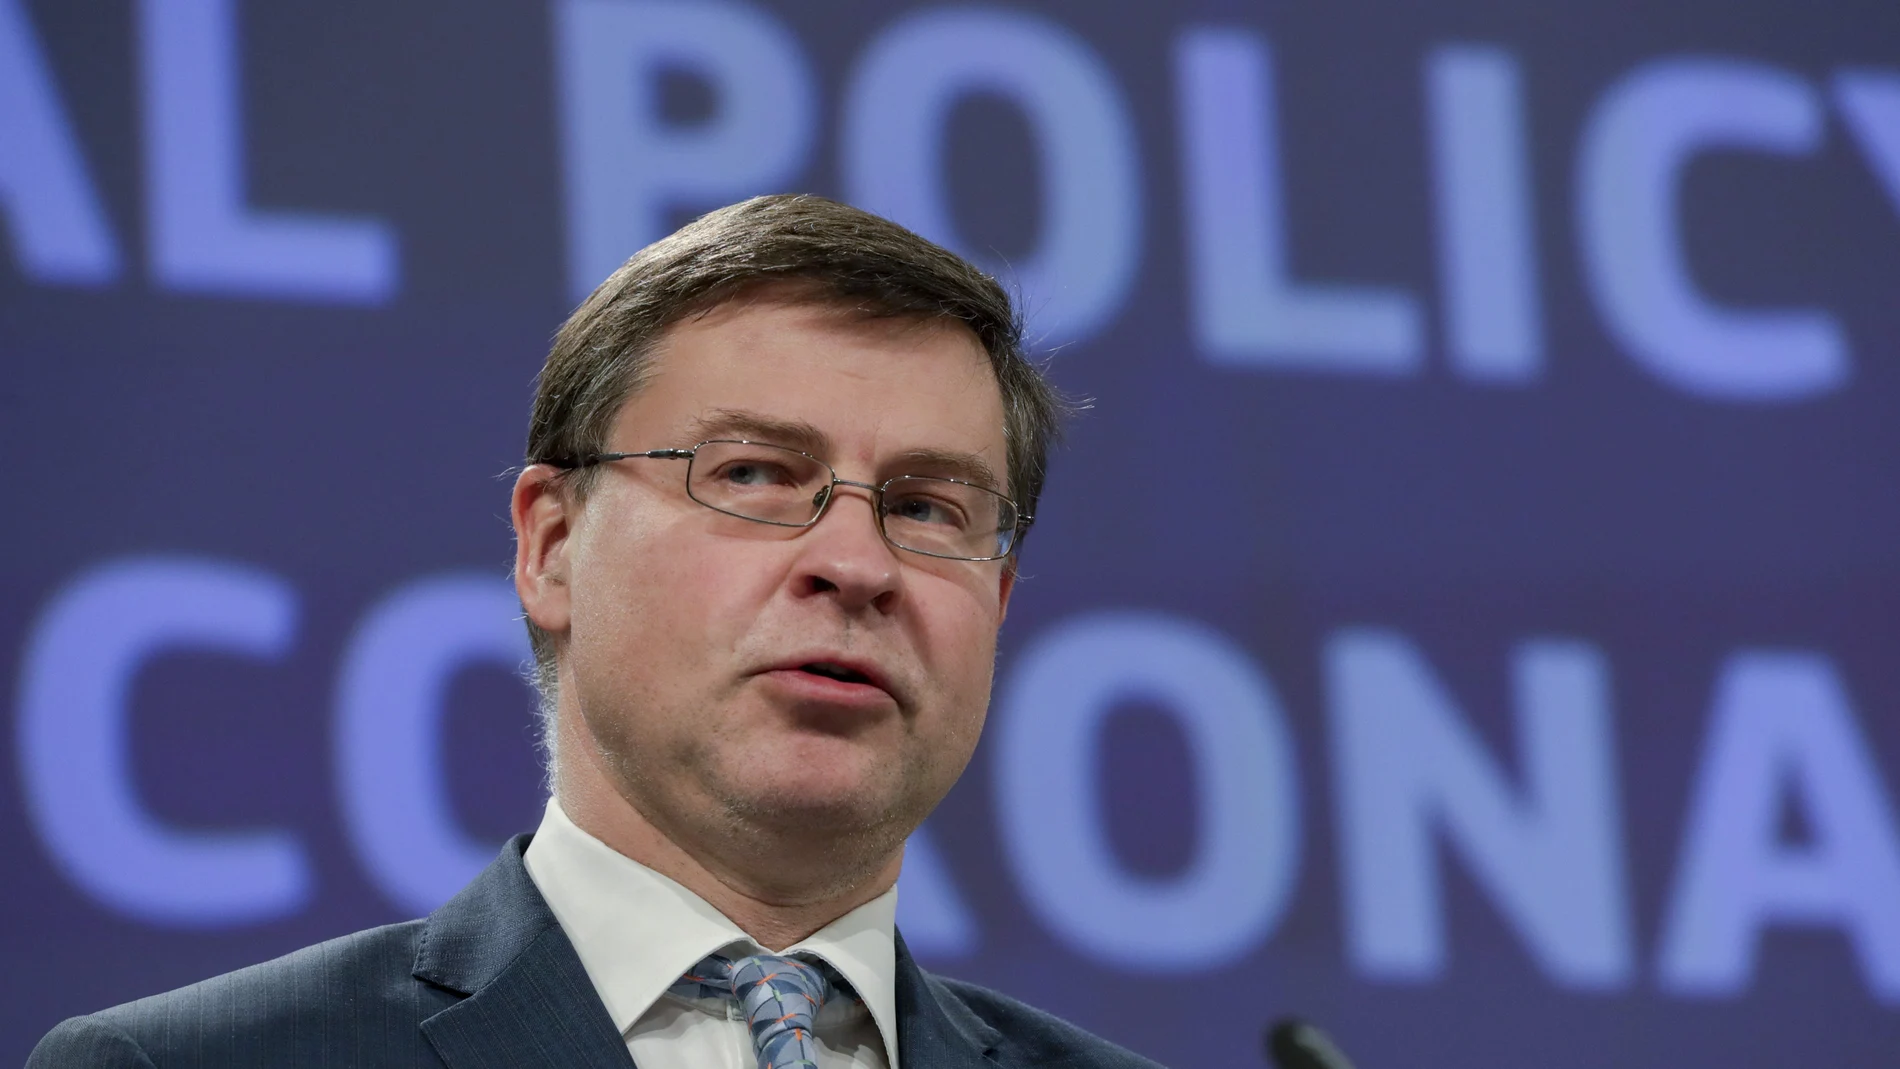 Valdis Dombrovskis, vicepresidente de la Comisión Europea y Comisario europeo del Euro y de Diálogo Social, interviene hoy para anunciar las medidas destinadas a impulsar el crecimiento económico